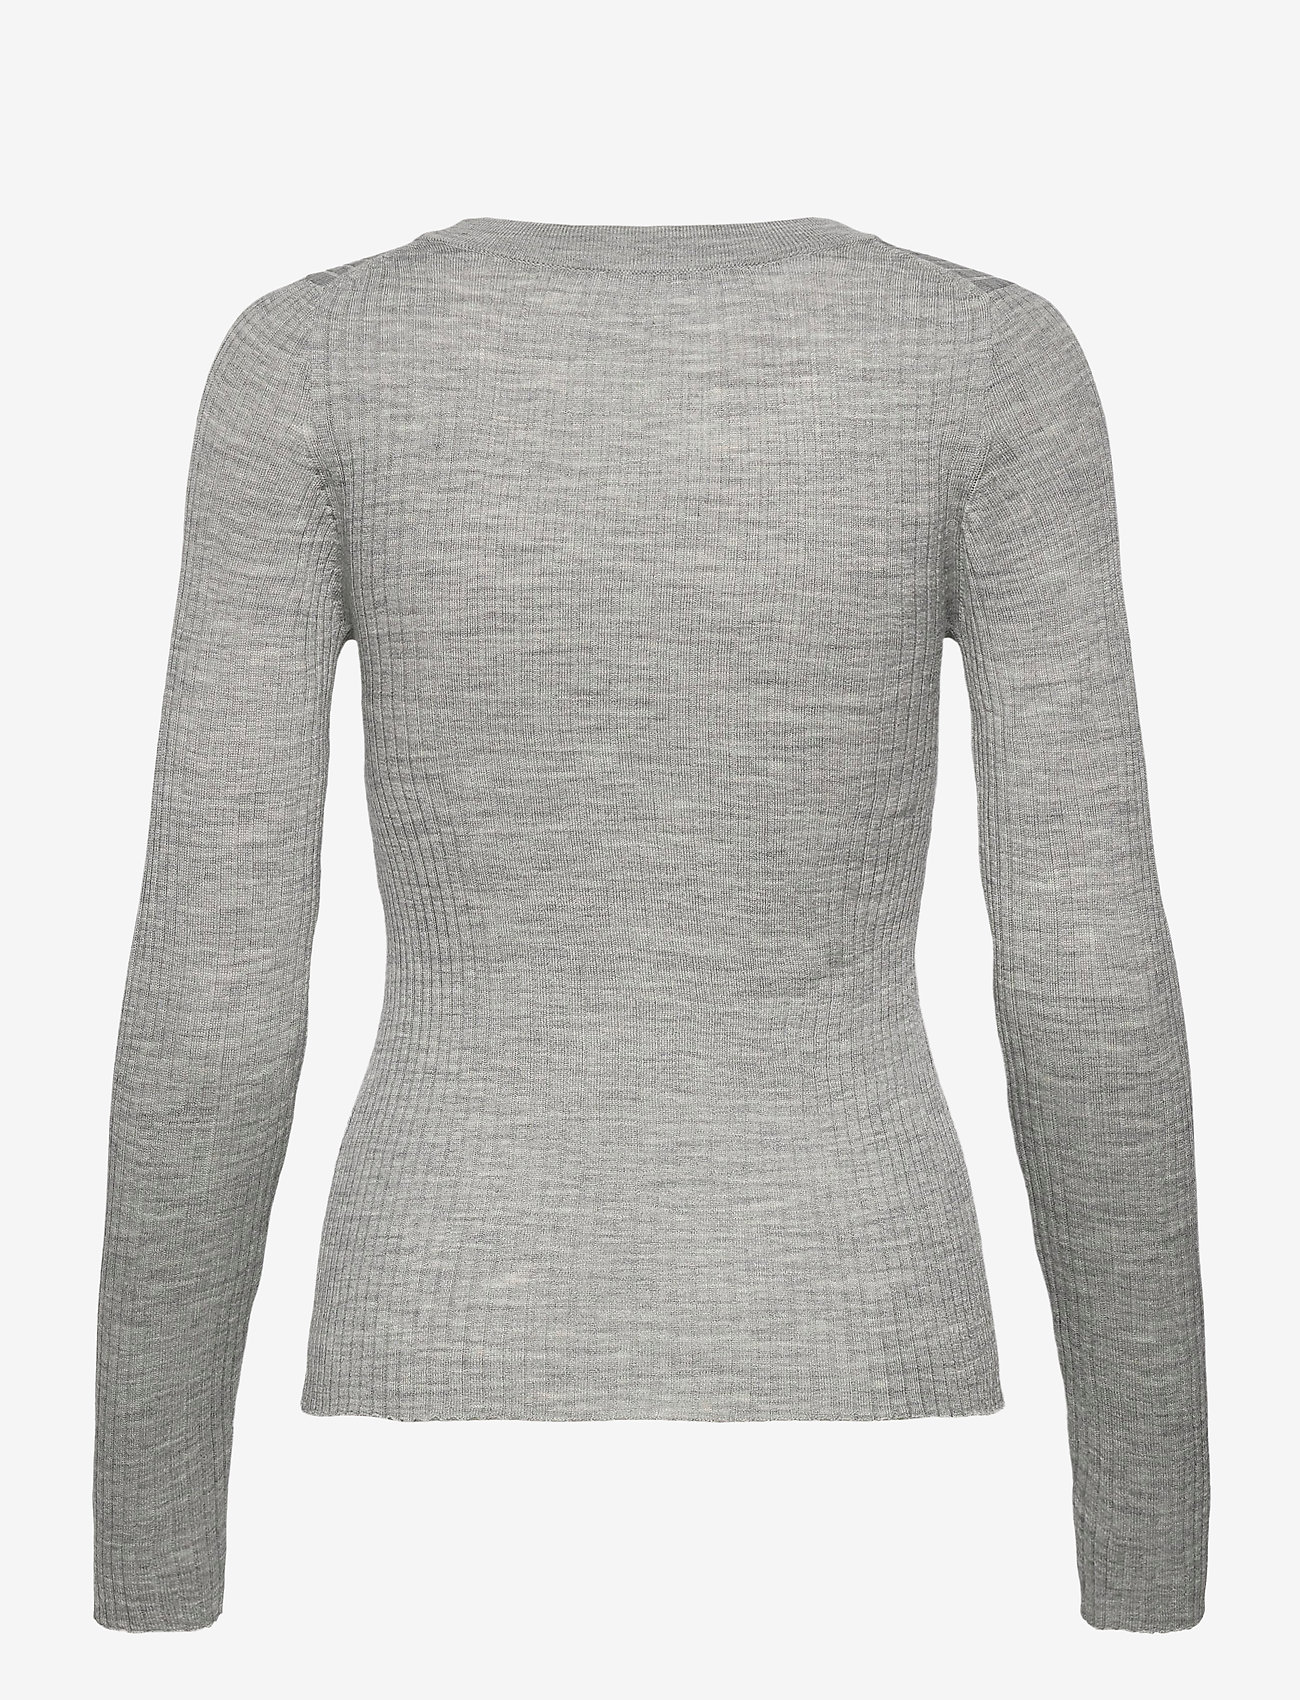 Selected Femme - SLFCOSTA NEW LS KNIT DEEP U-NECK - swetry - light grey melange - 1